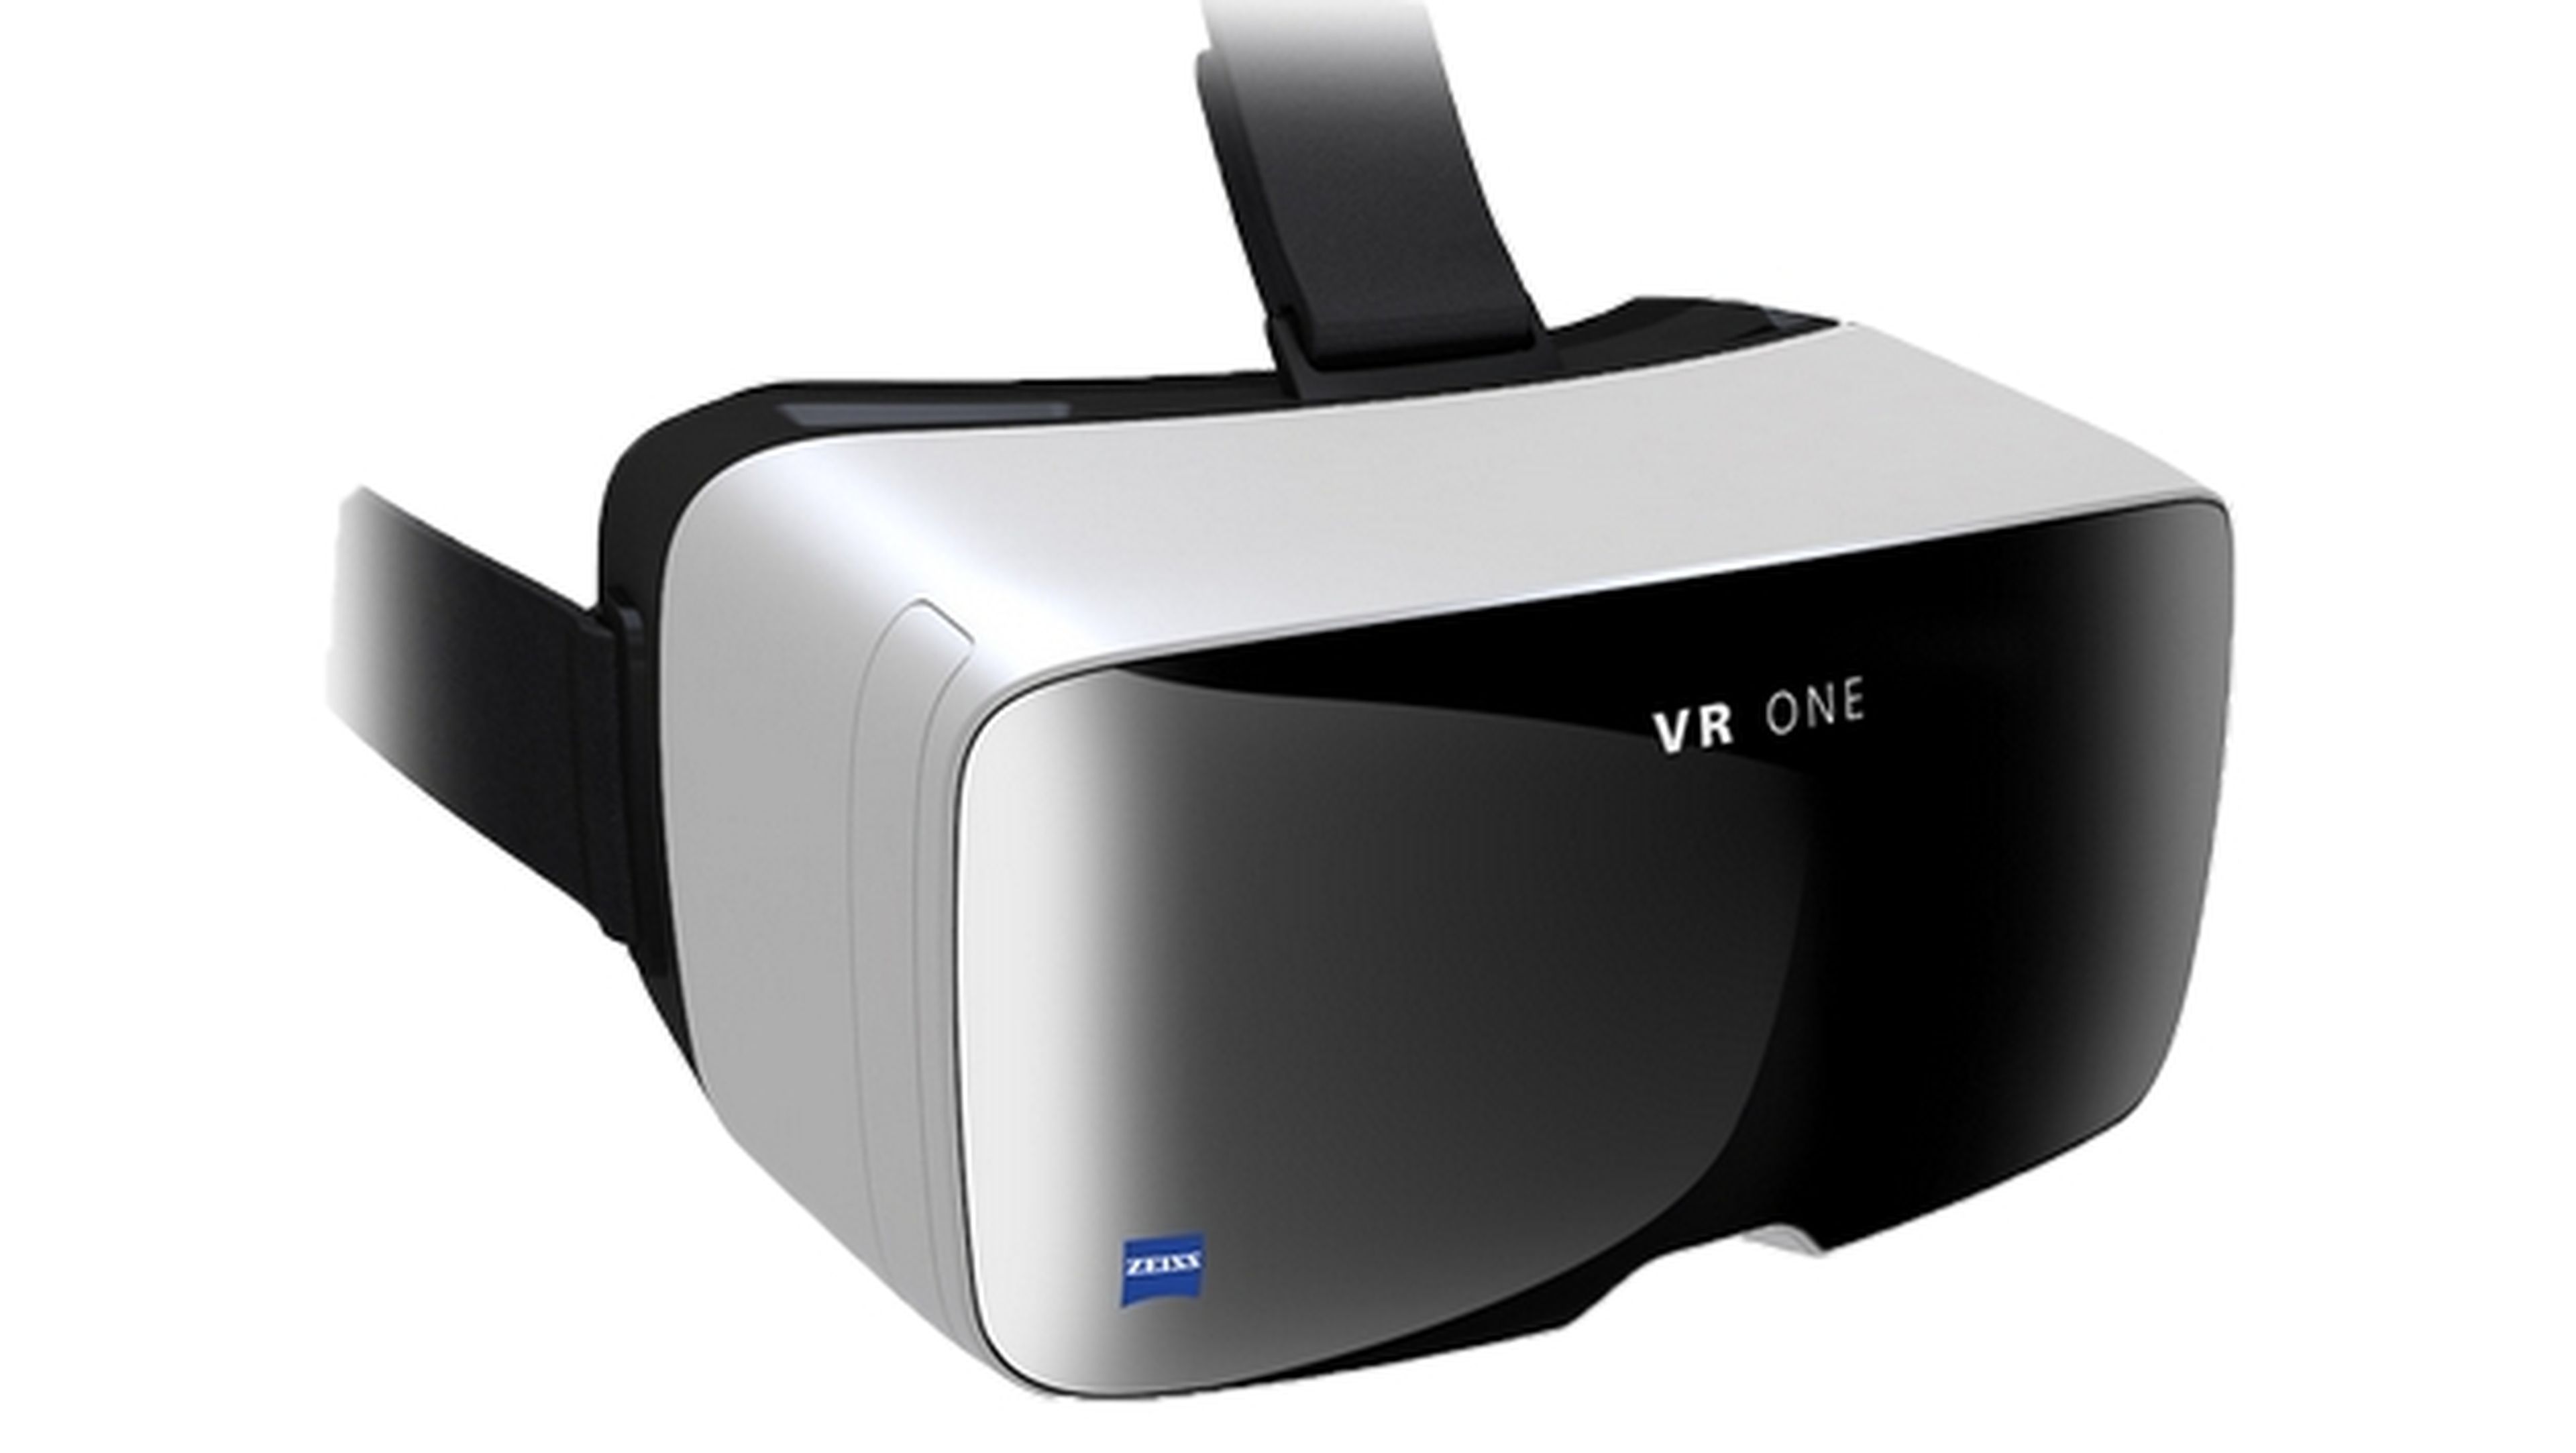 Carl Zeiss VR One, gafas de realidad virtual compatibles con iPhone 6 y Samsung Galaxy S5 por sólo 99 dólares.